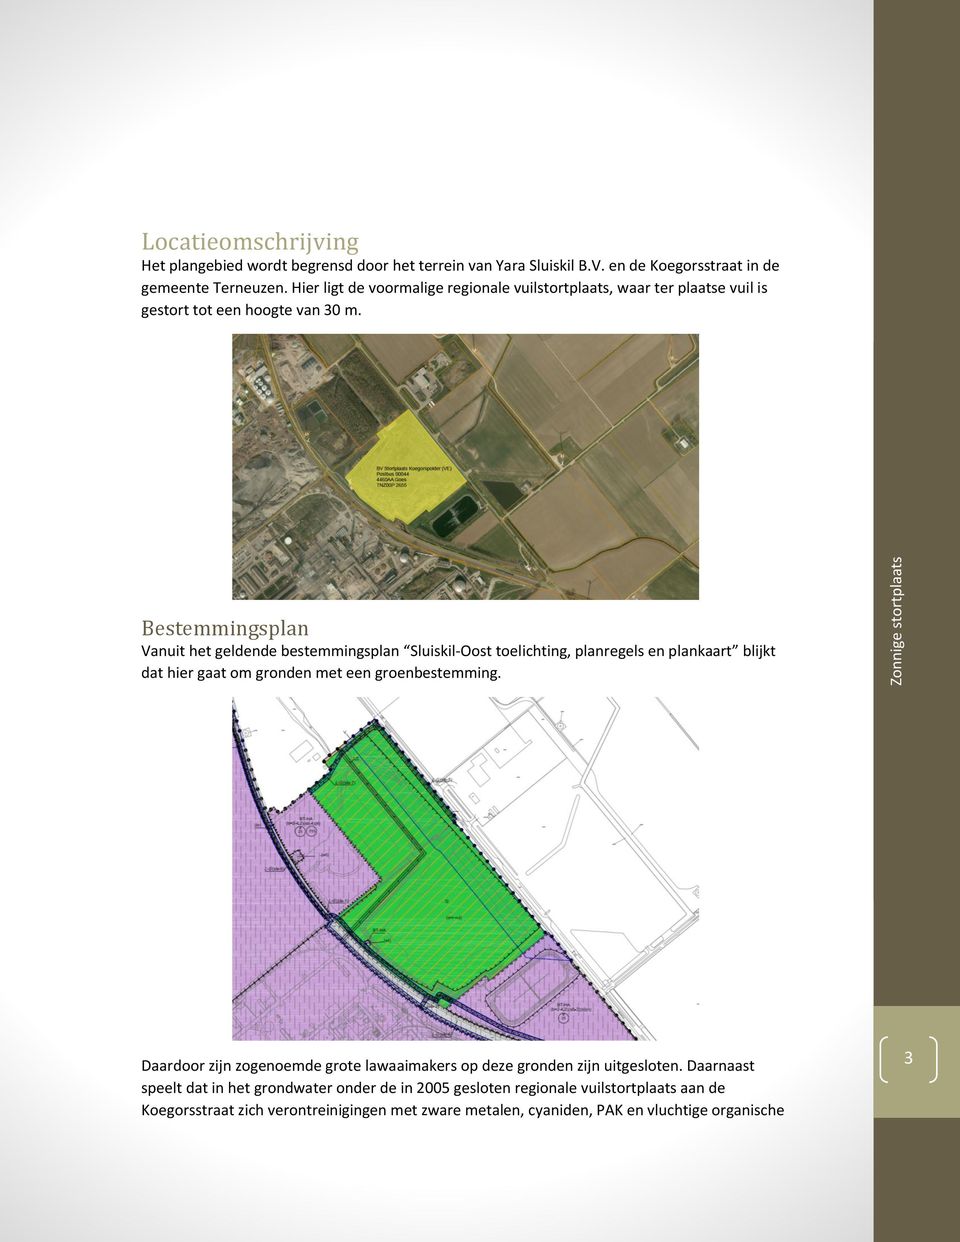 Bestemmingsplan Vanuit het geldende bestemmingsplan Sluiskil-Oost toelichting, planregels en plankaart blijkt dat hier gaat om gronden met een groenbestemming.